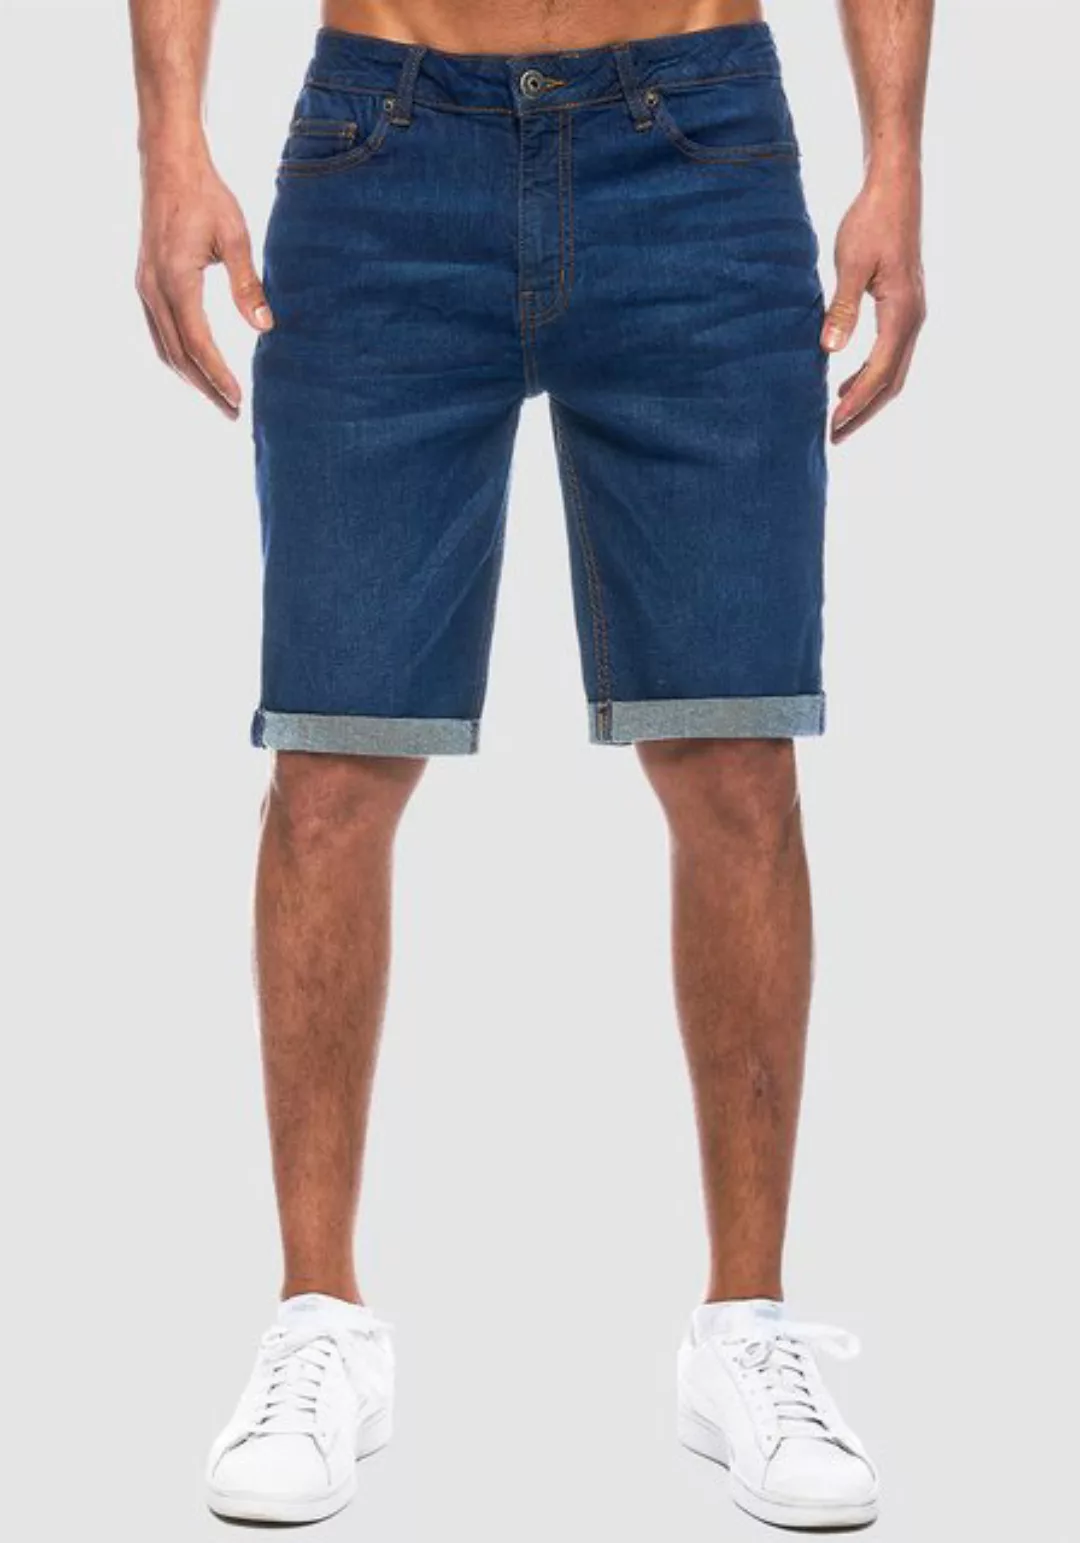 Smith & Solo Jeansshorts Herren, kurze Hosen Männer, Shorts 5-Pocket Style günstig online kaufen